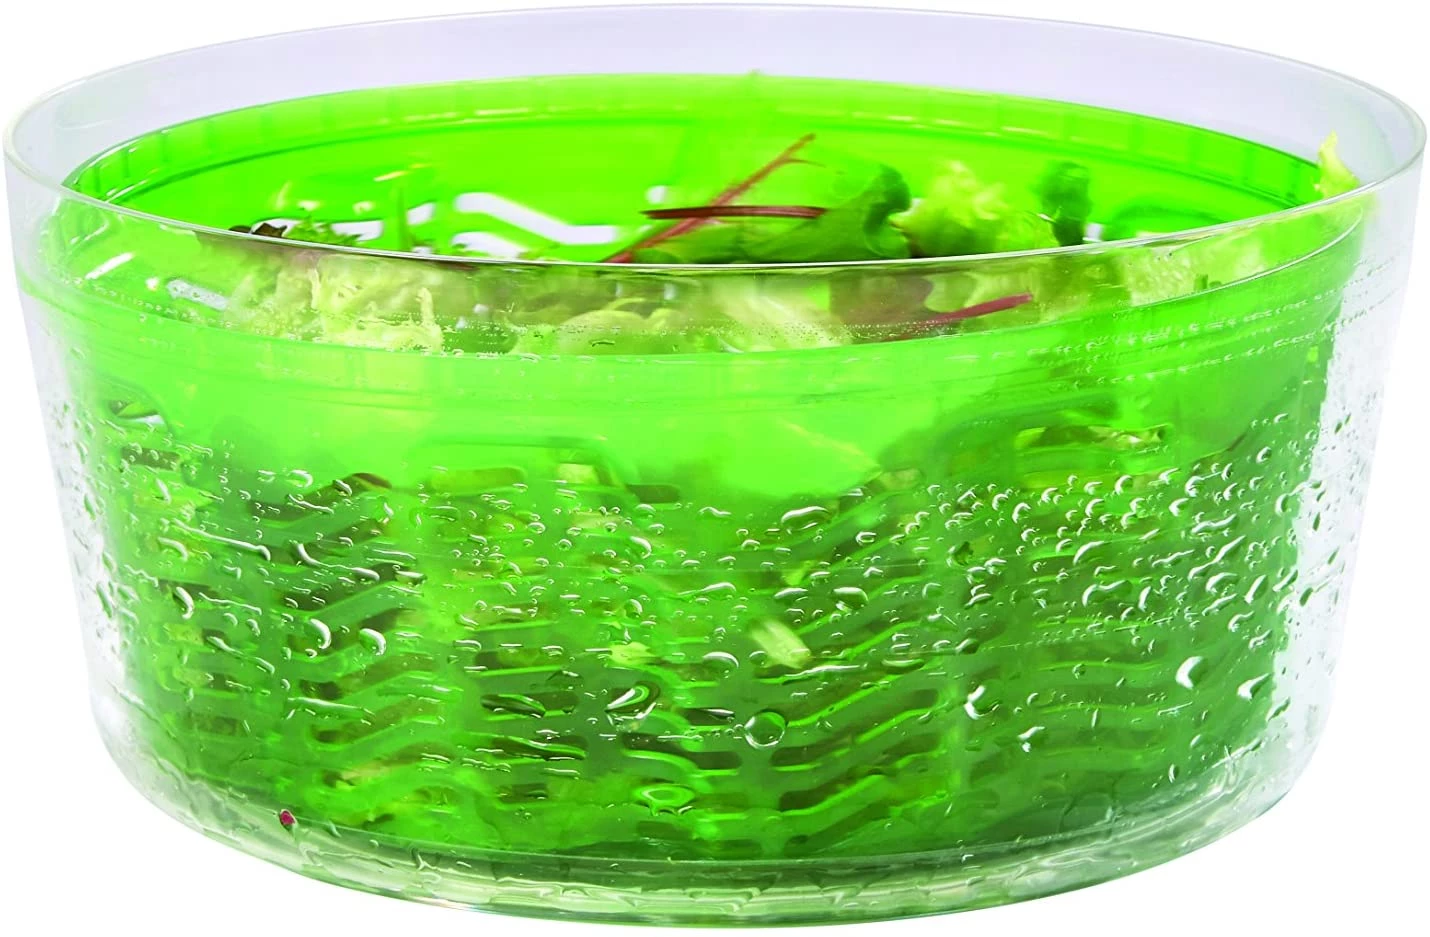 Сушка для зелени Zyliss Swift Dry Salad Spinner Small Green, диаметр 22 см, зеленый Zyliss E940015 фото 5